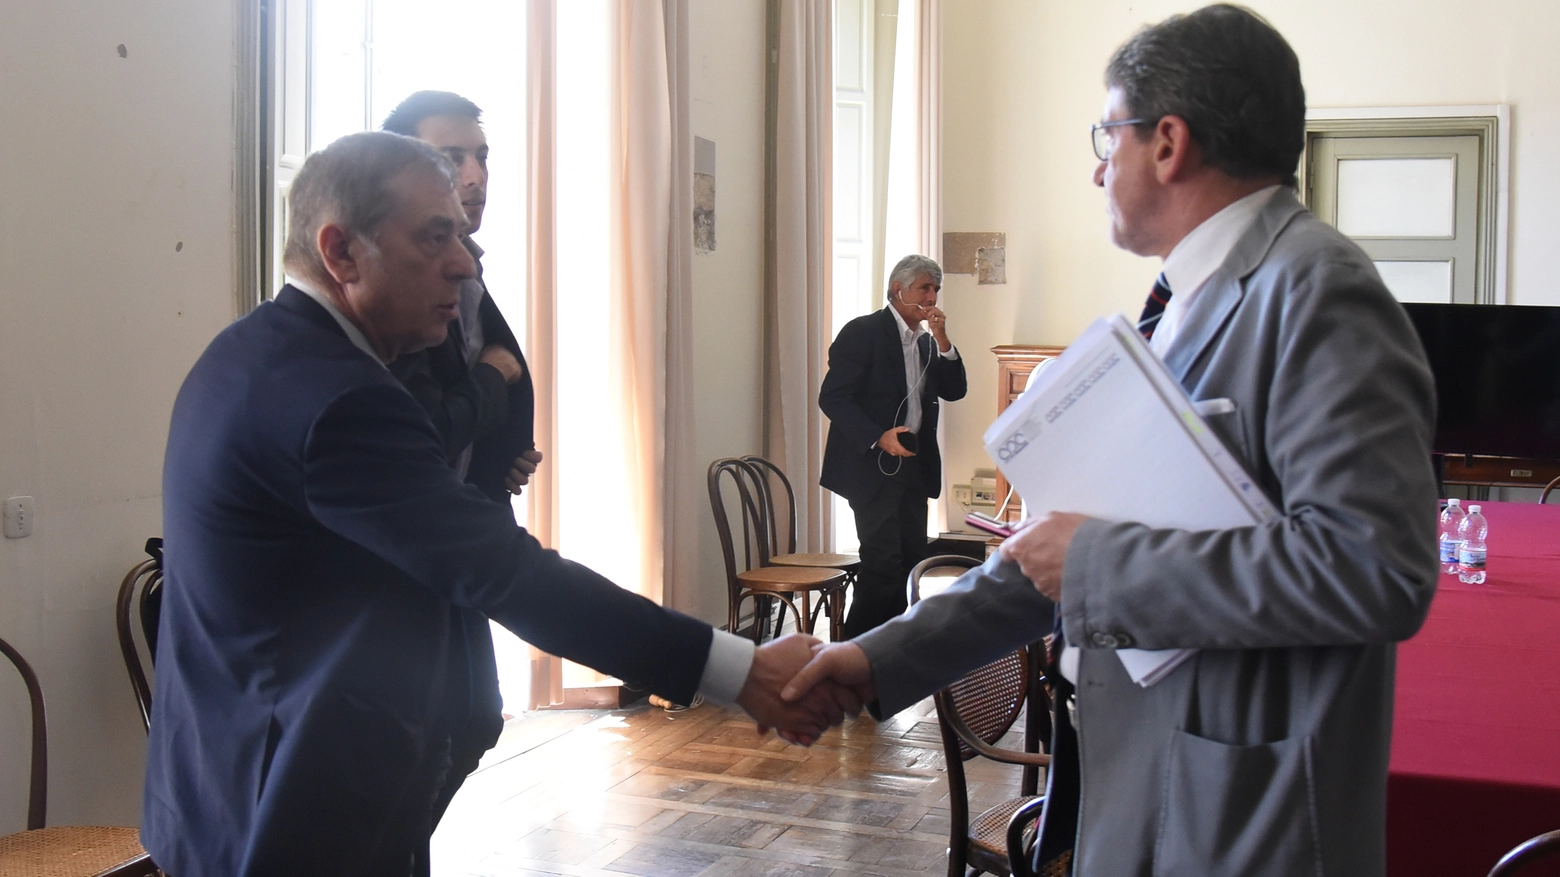 L'incontro in Comune fra il sindaco Muzzarelli e Caliendo (foto Fiocchi)